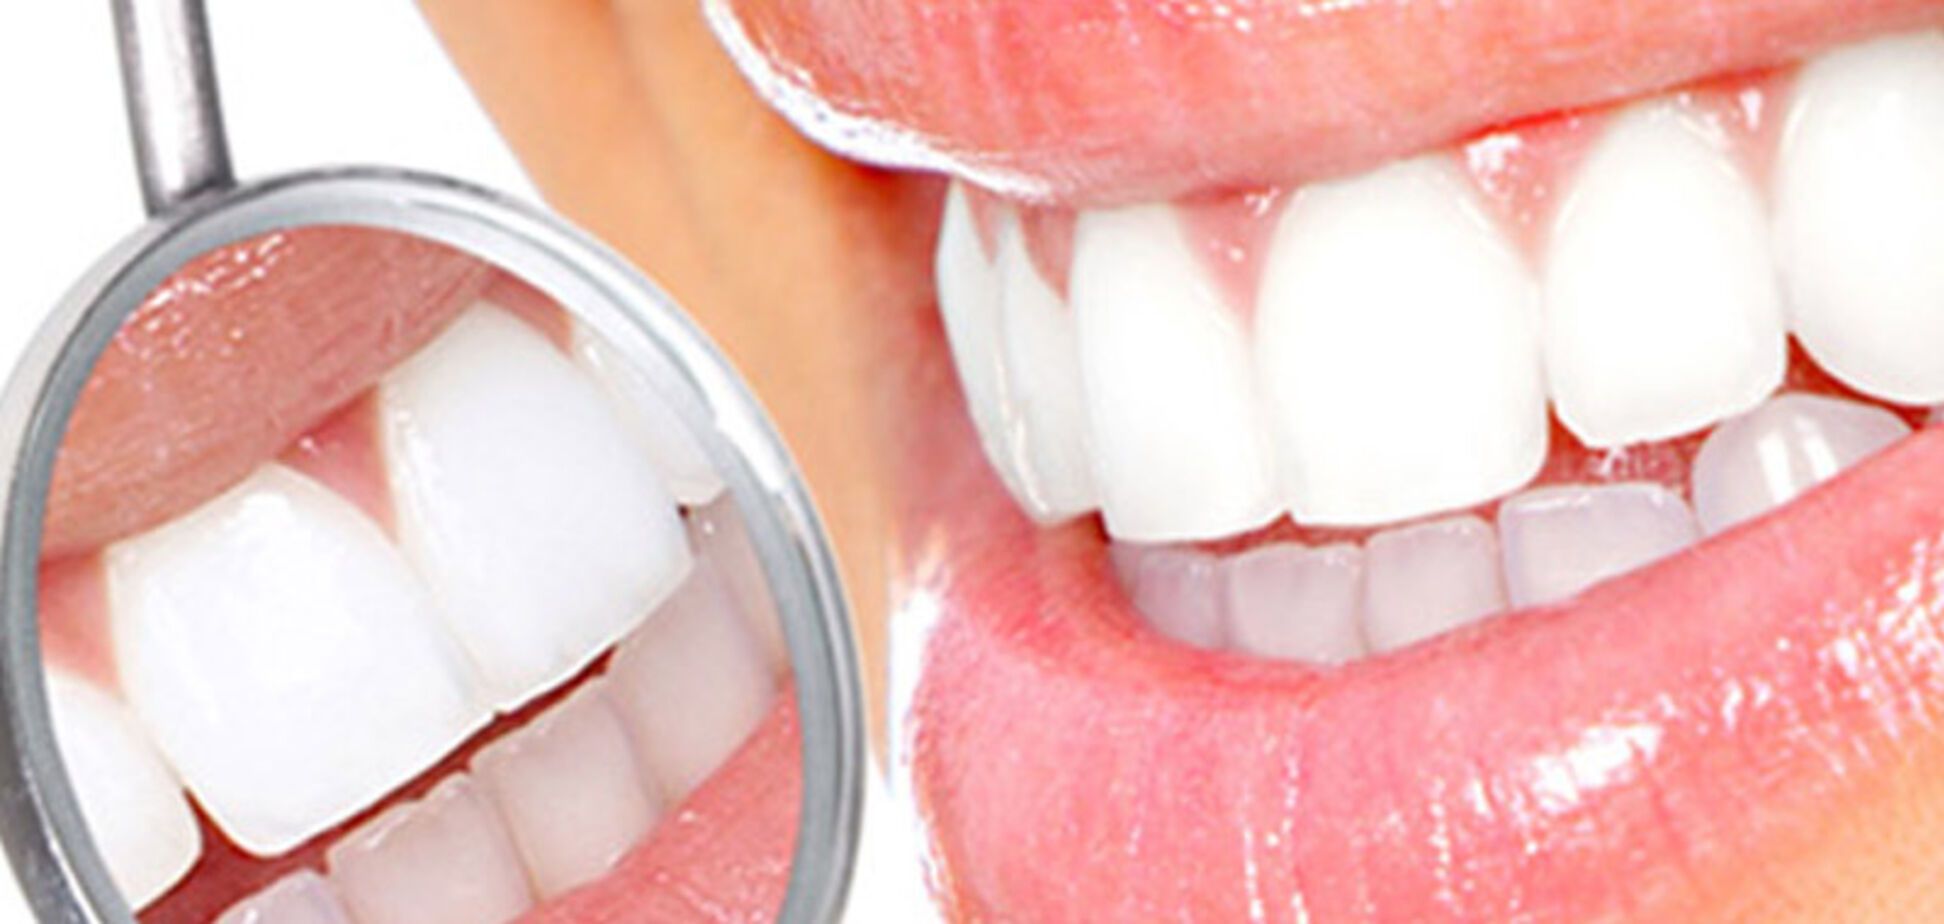  Топ-5 продуктів, які сильно пошкоджують зуби 